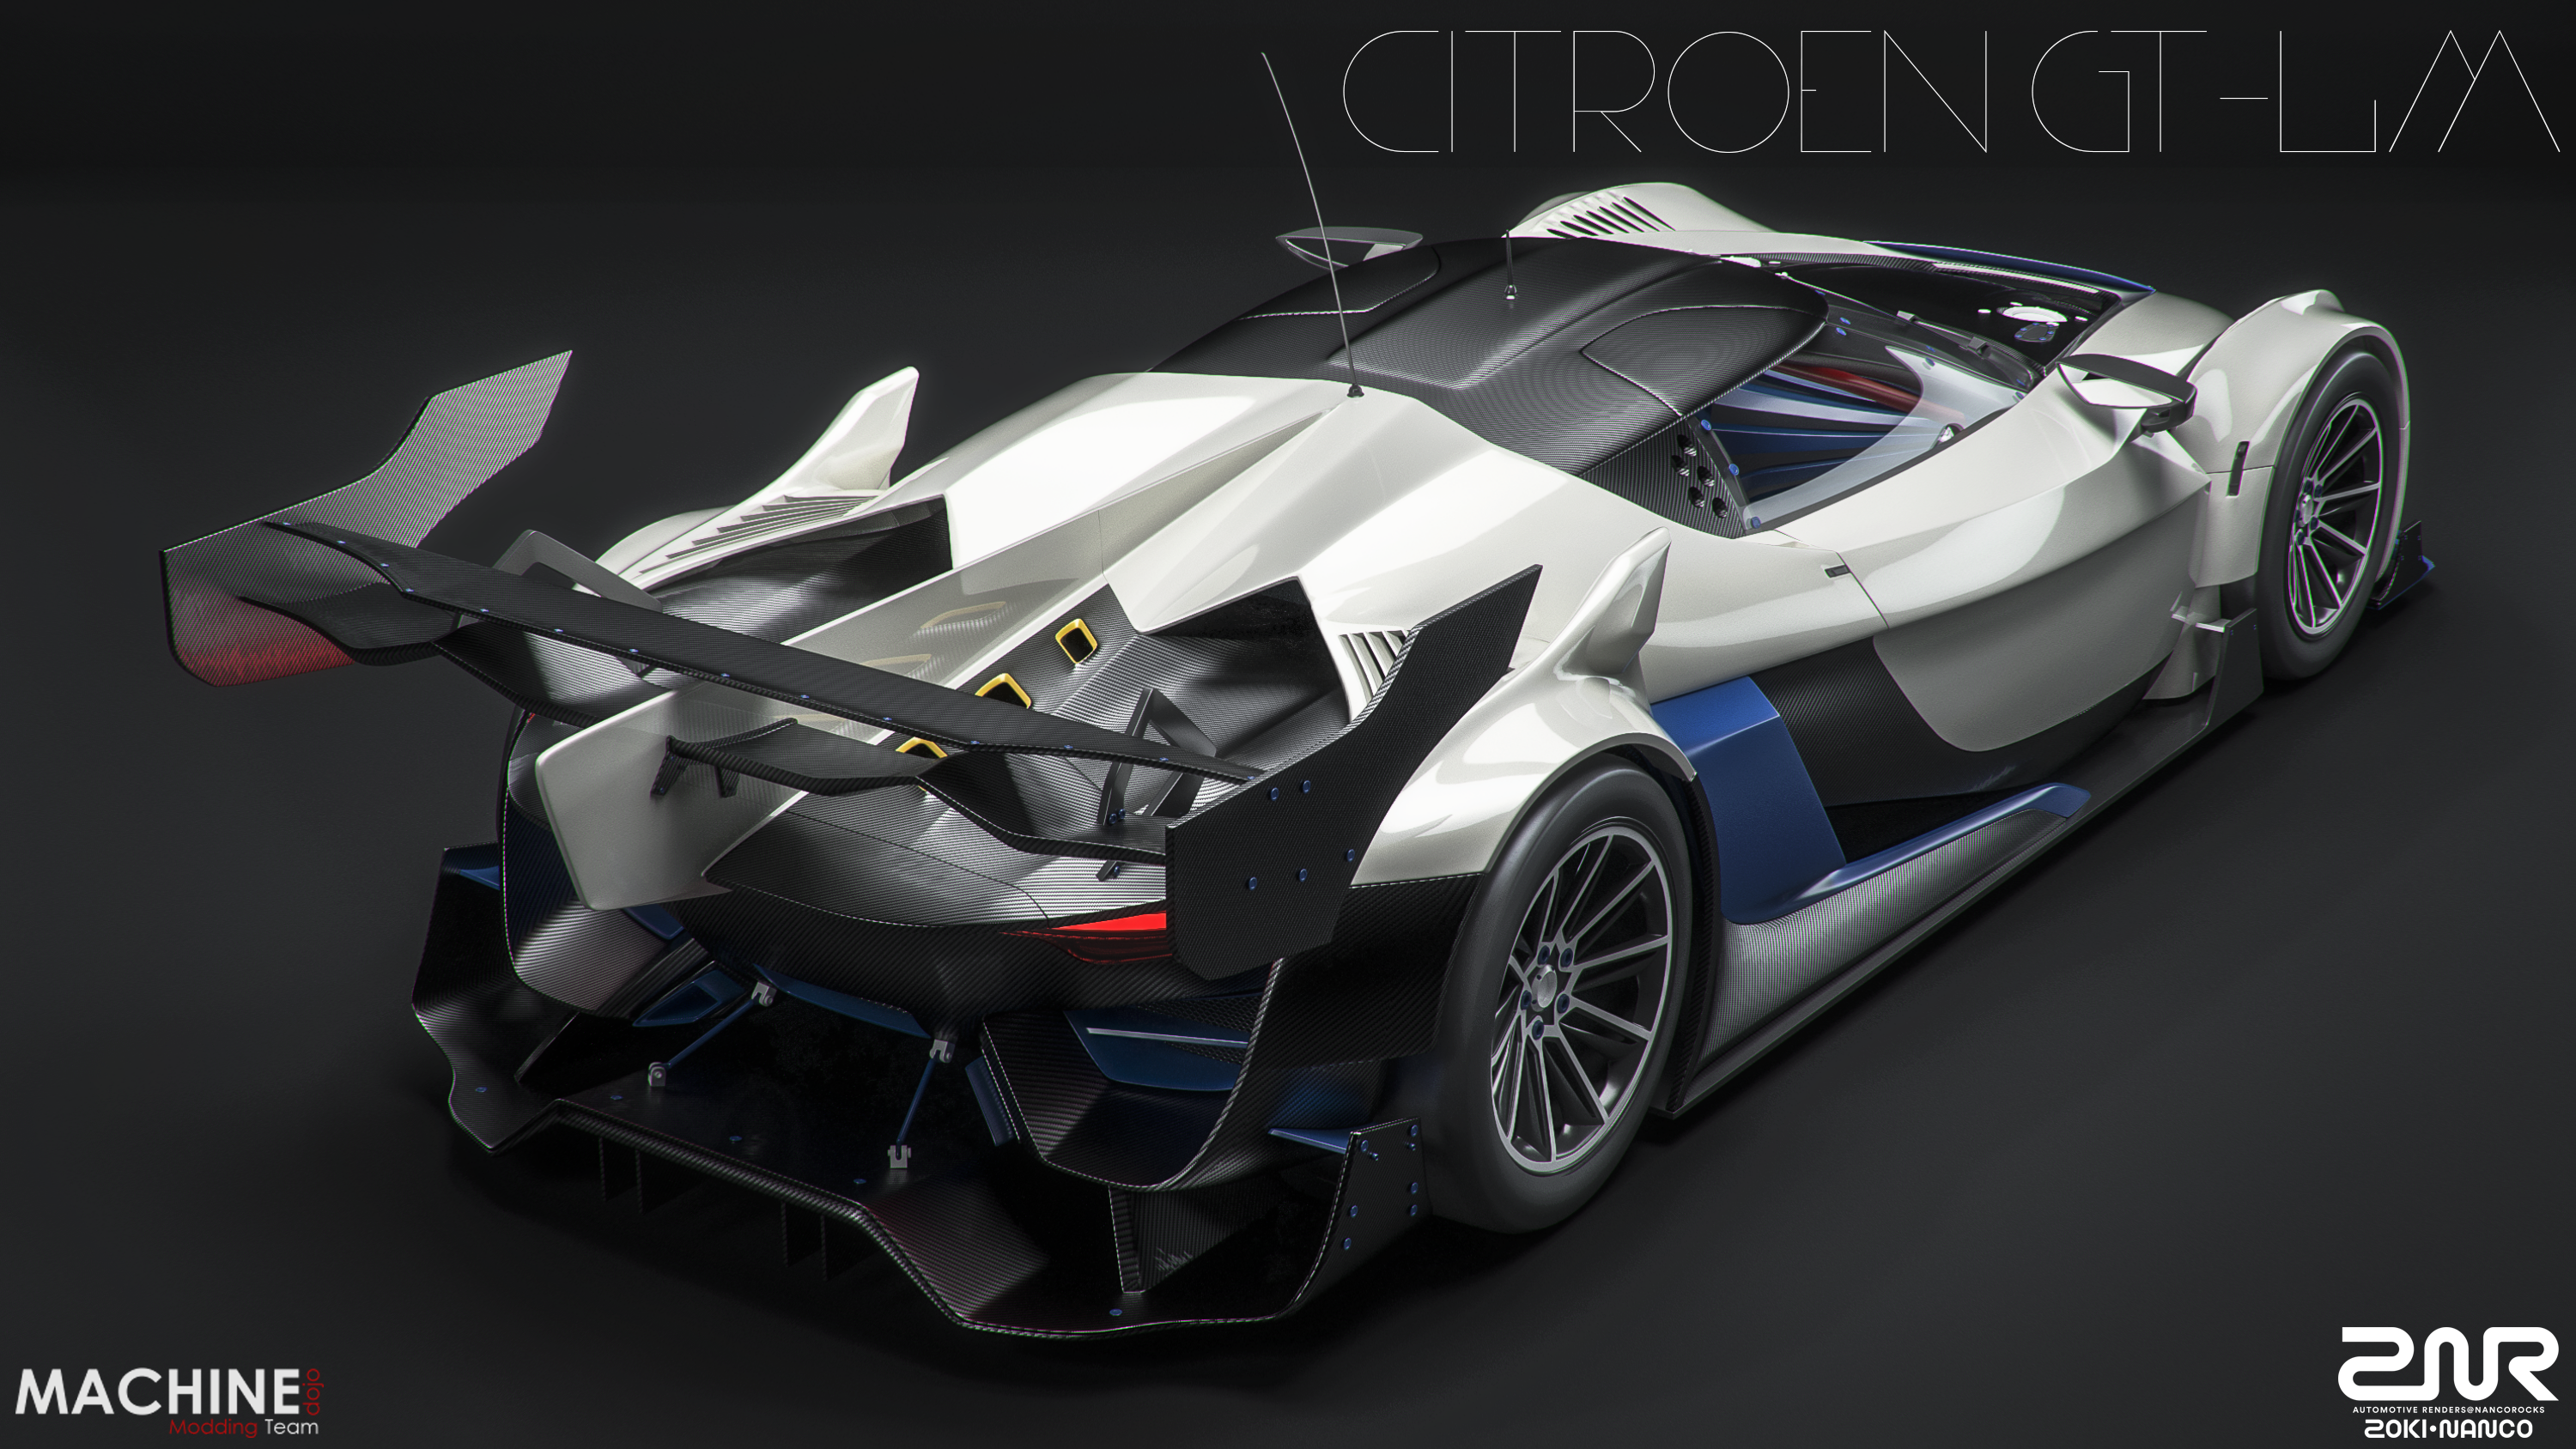 Citroen GT-LM by nancorocks on DeviantArt